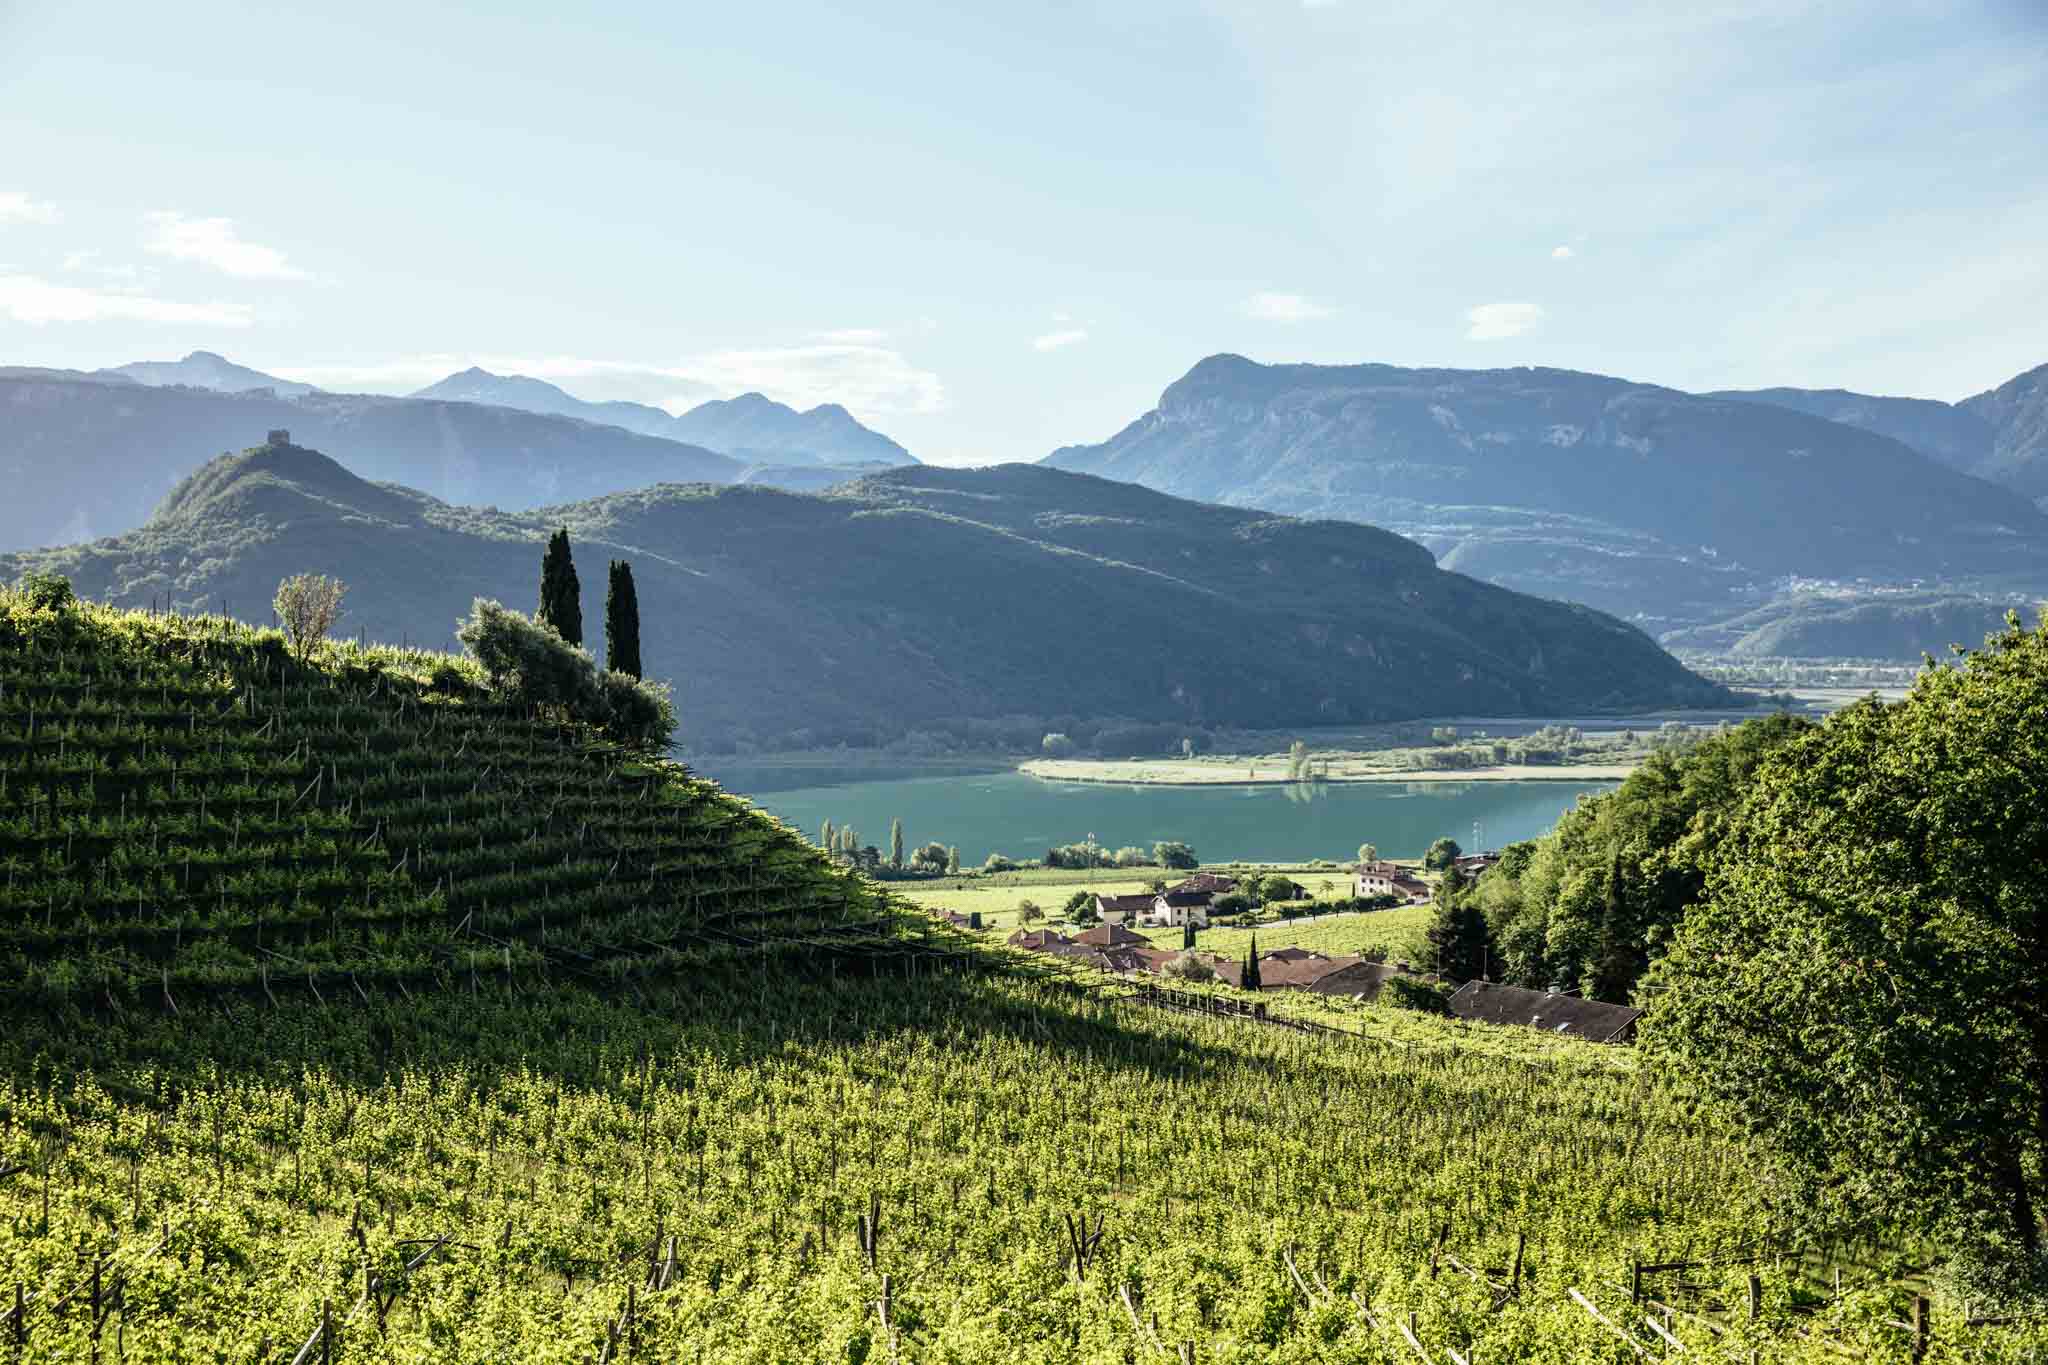 Le vignoble du Trentino (I): les leviers technico-économiques et scientifiques de son développement